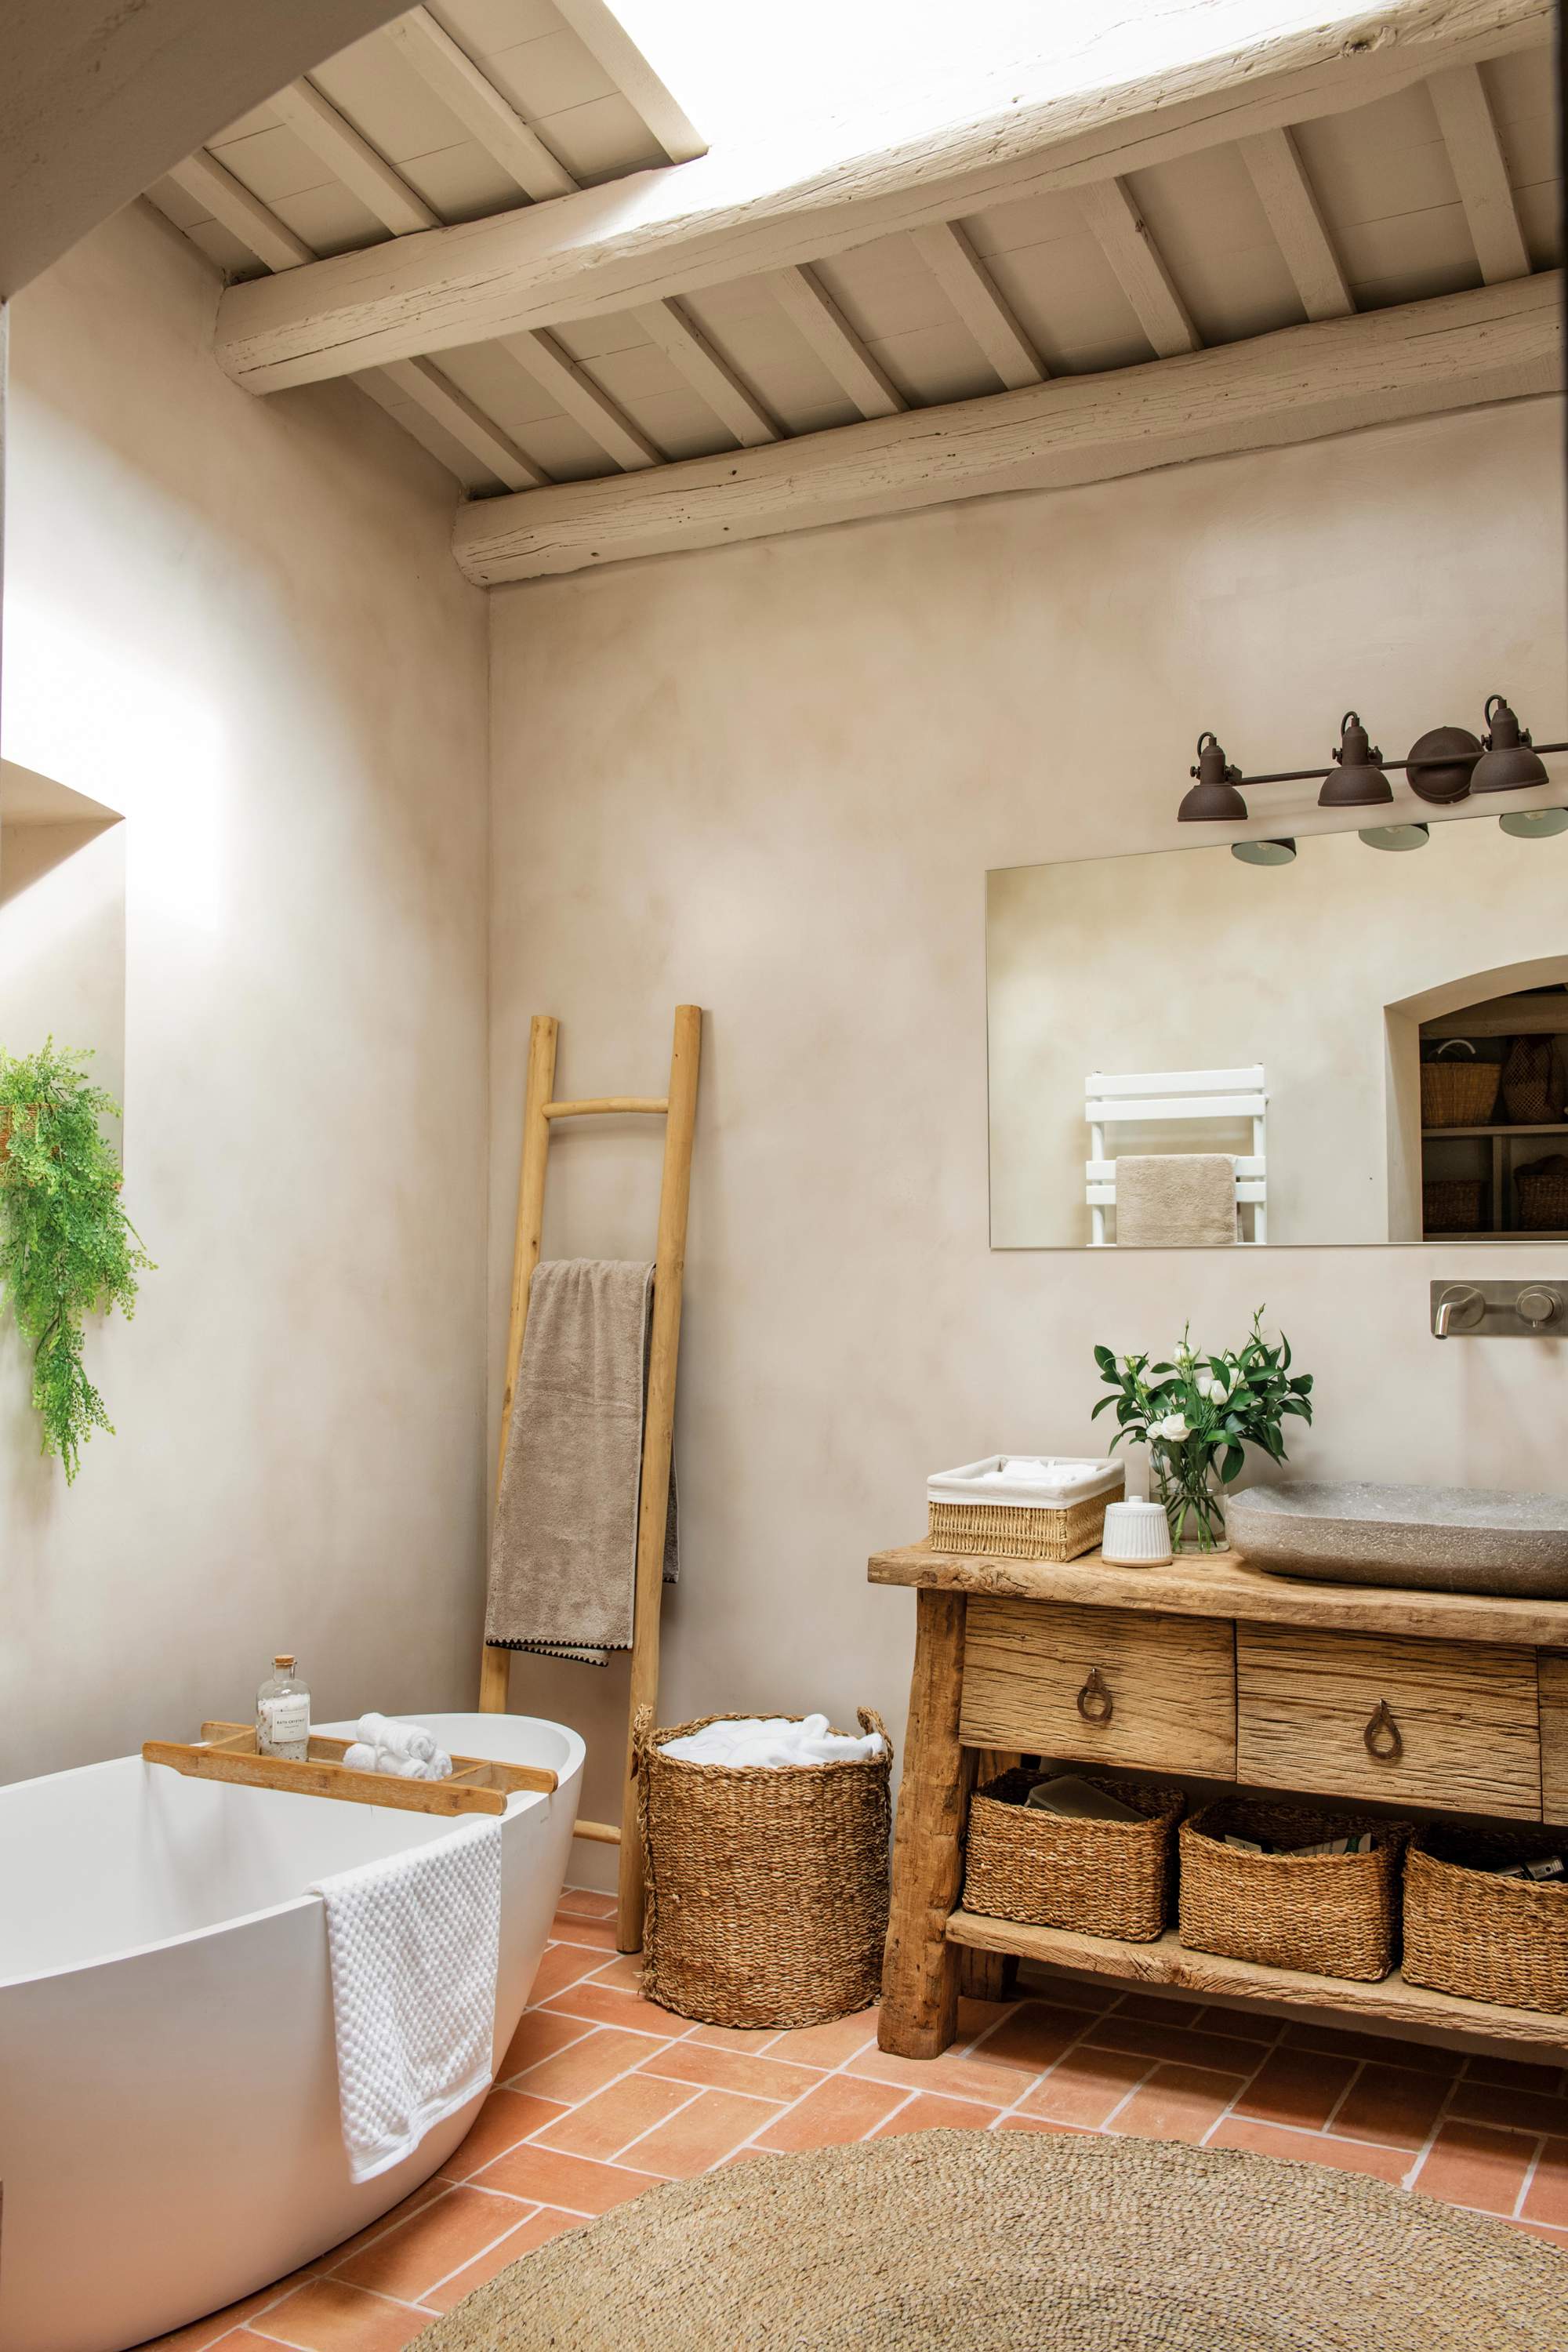 Baño en color arena con bañera, mueble y escalera toallero de madera.